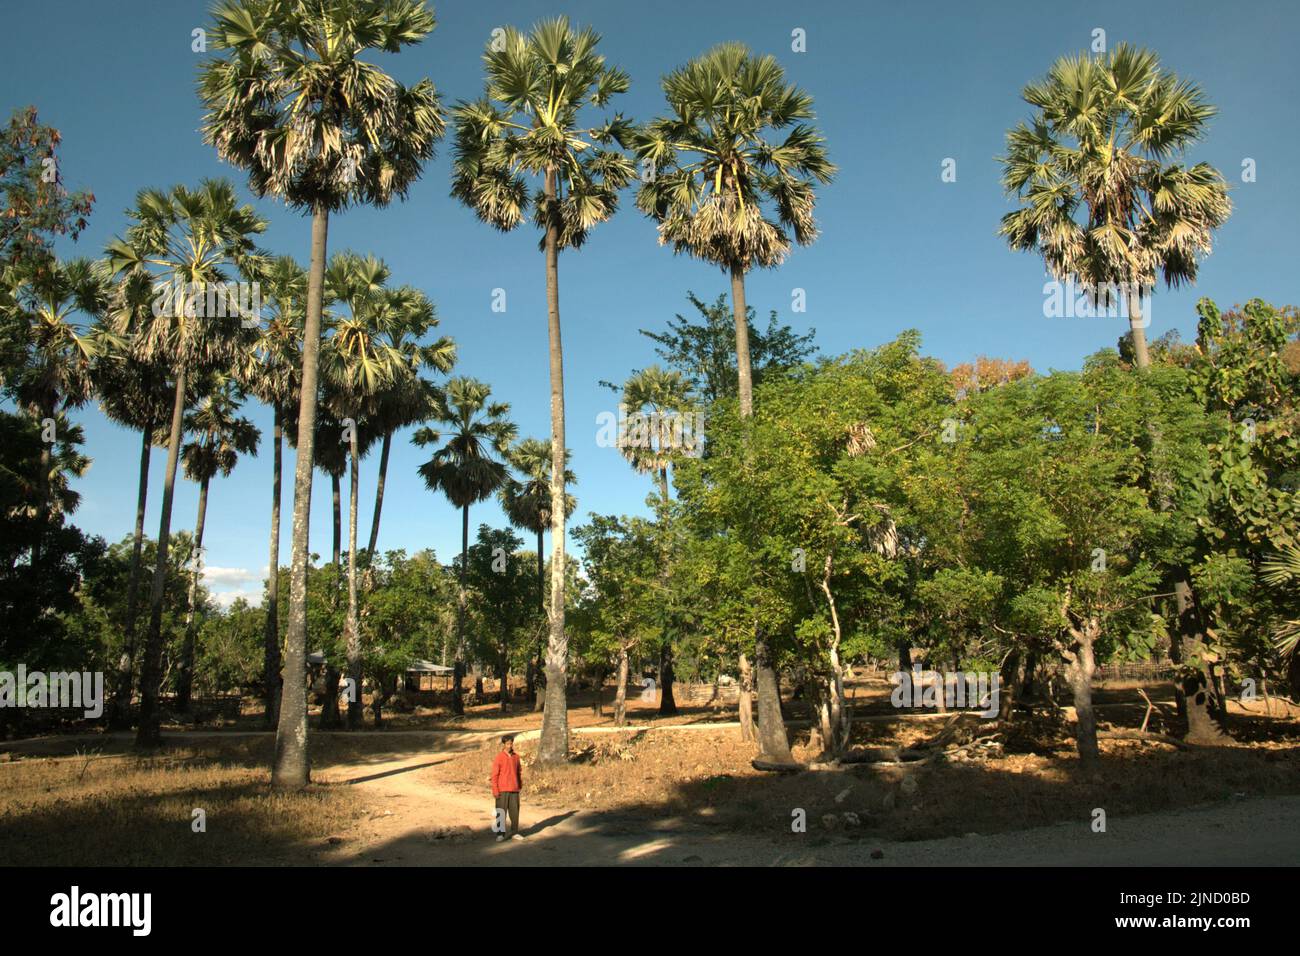 Un abitante del villaggio è fotografato davanti agli alberi a clima secco, tra cui la palma da zucchero (Borassus flabellifer), che è preziosa per la gente del posto a Rote Island, Nusa Tenggara orientale, Indonesia. Foto Stock